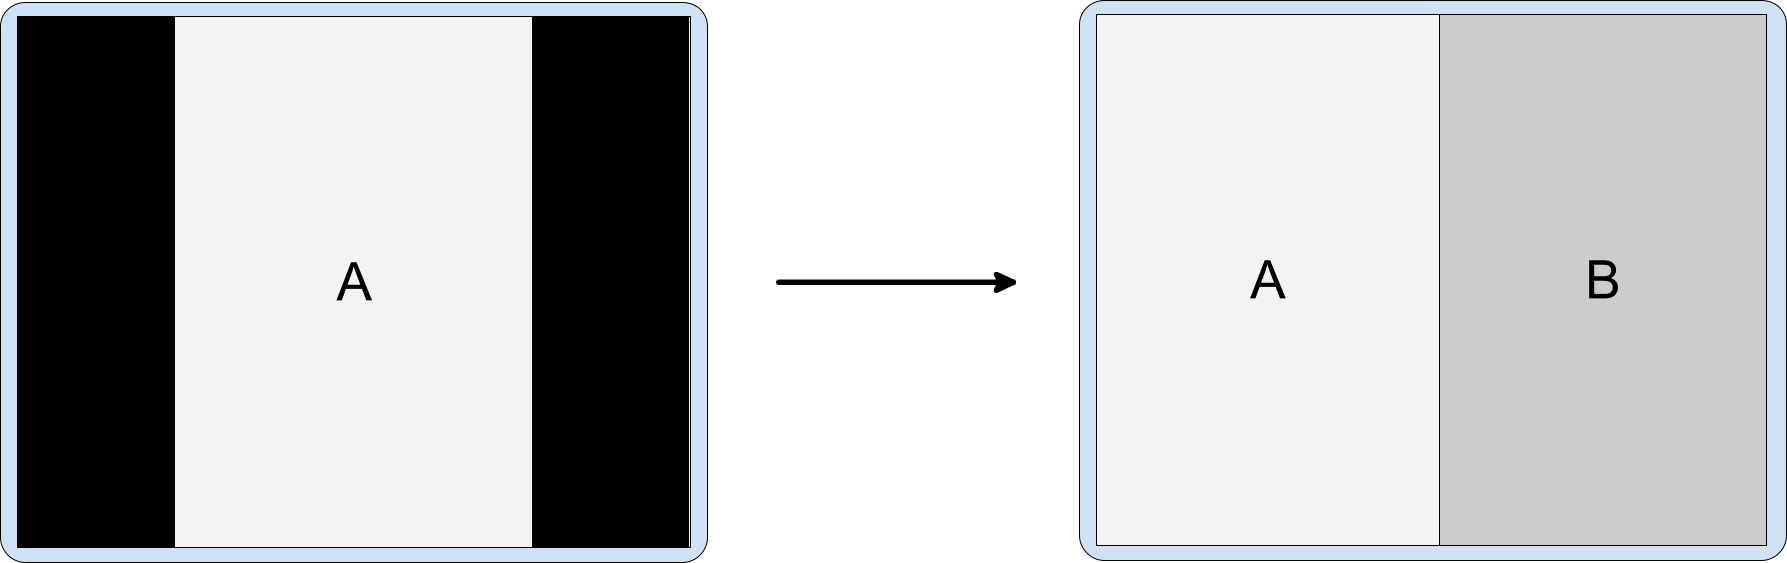 Tính năng nhúng hoạt động với ứng dụng chỉ hiển thị theo chiều dọc trên màn hình ngang. Hoạt động A (nằm trong khung viền hộp thư, chỉ hiển thị theo chiều dọc) khởi chạy hoạt động B được nhúng.